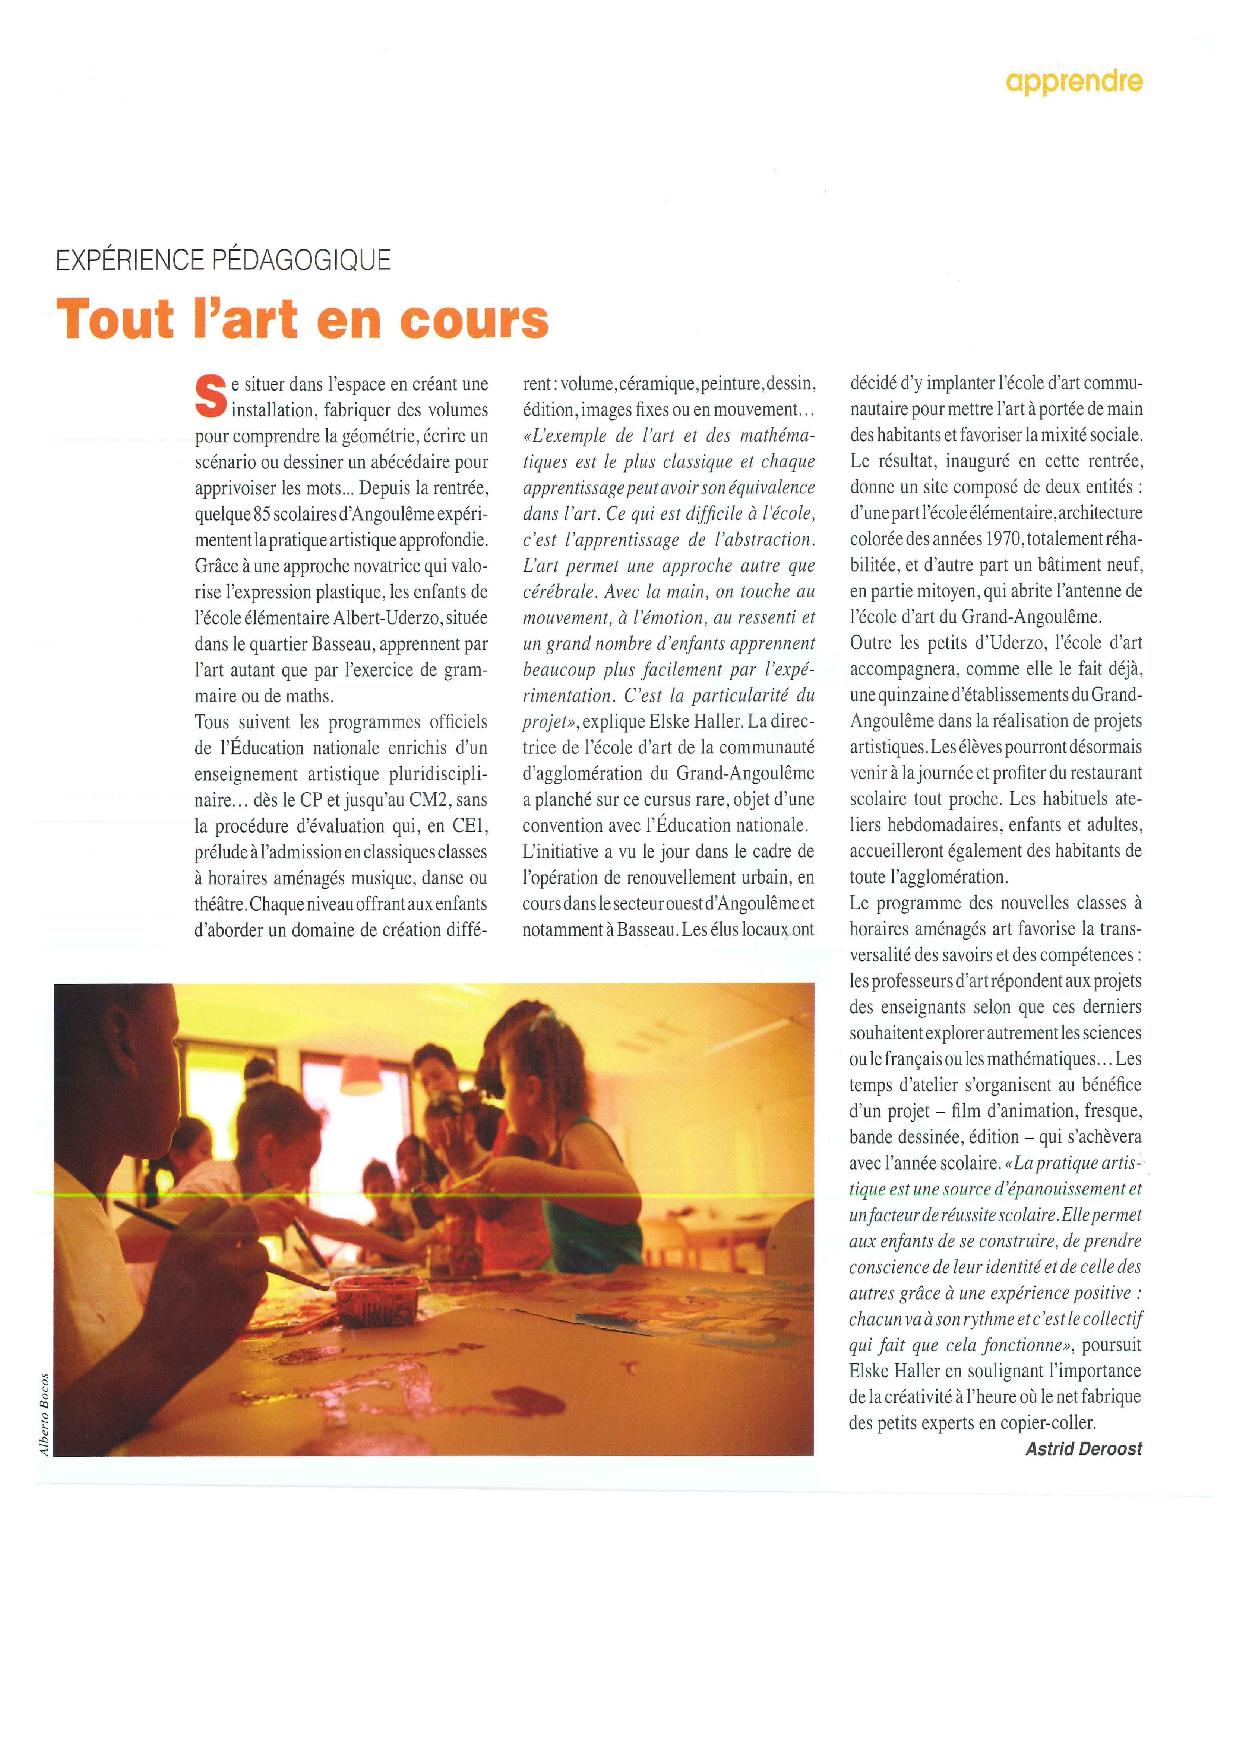 Article de la revue L'Actualité Poitou-Charentes / GrandAngoulême